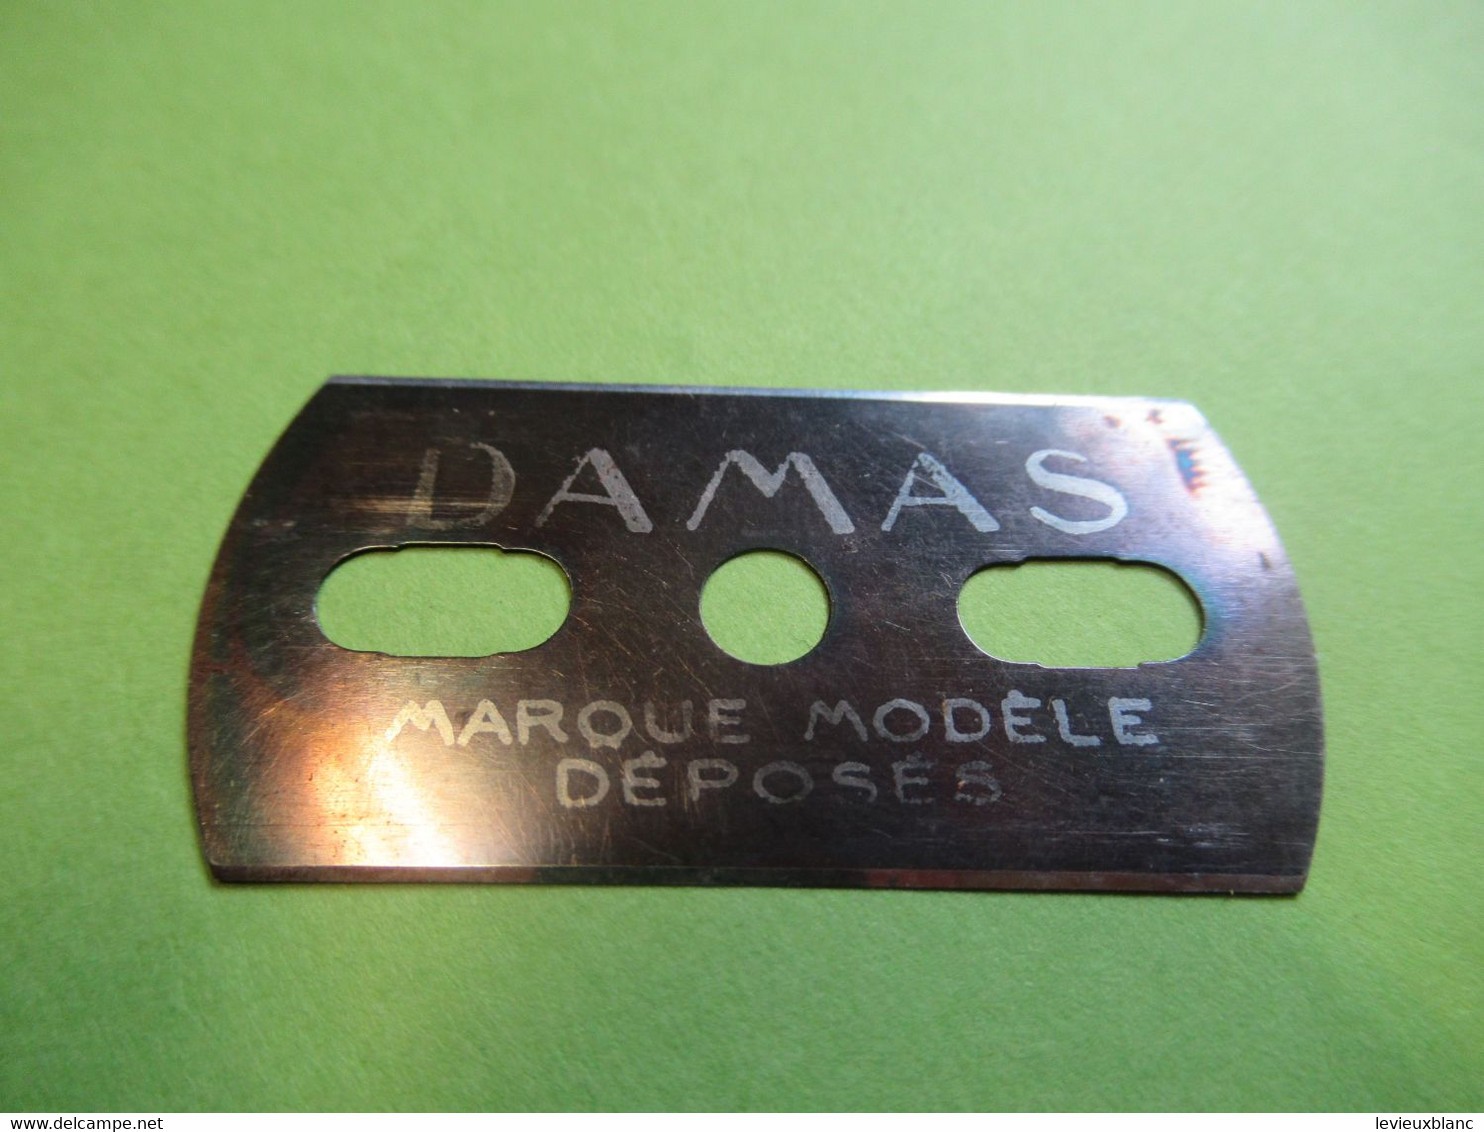 1 Lame De Rasoir Usagée ,sans Emballage Et Sans étui/DAMAS Bleue/Marque Modèle Déposés/Vers 1920-1950           PARF216 - Lamette Da Barba